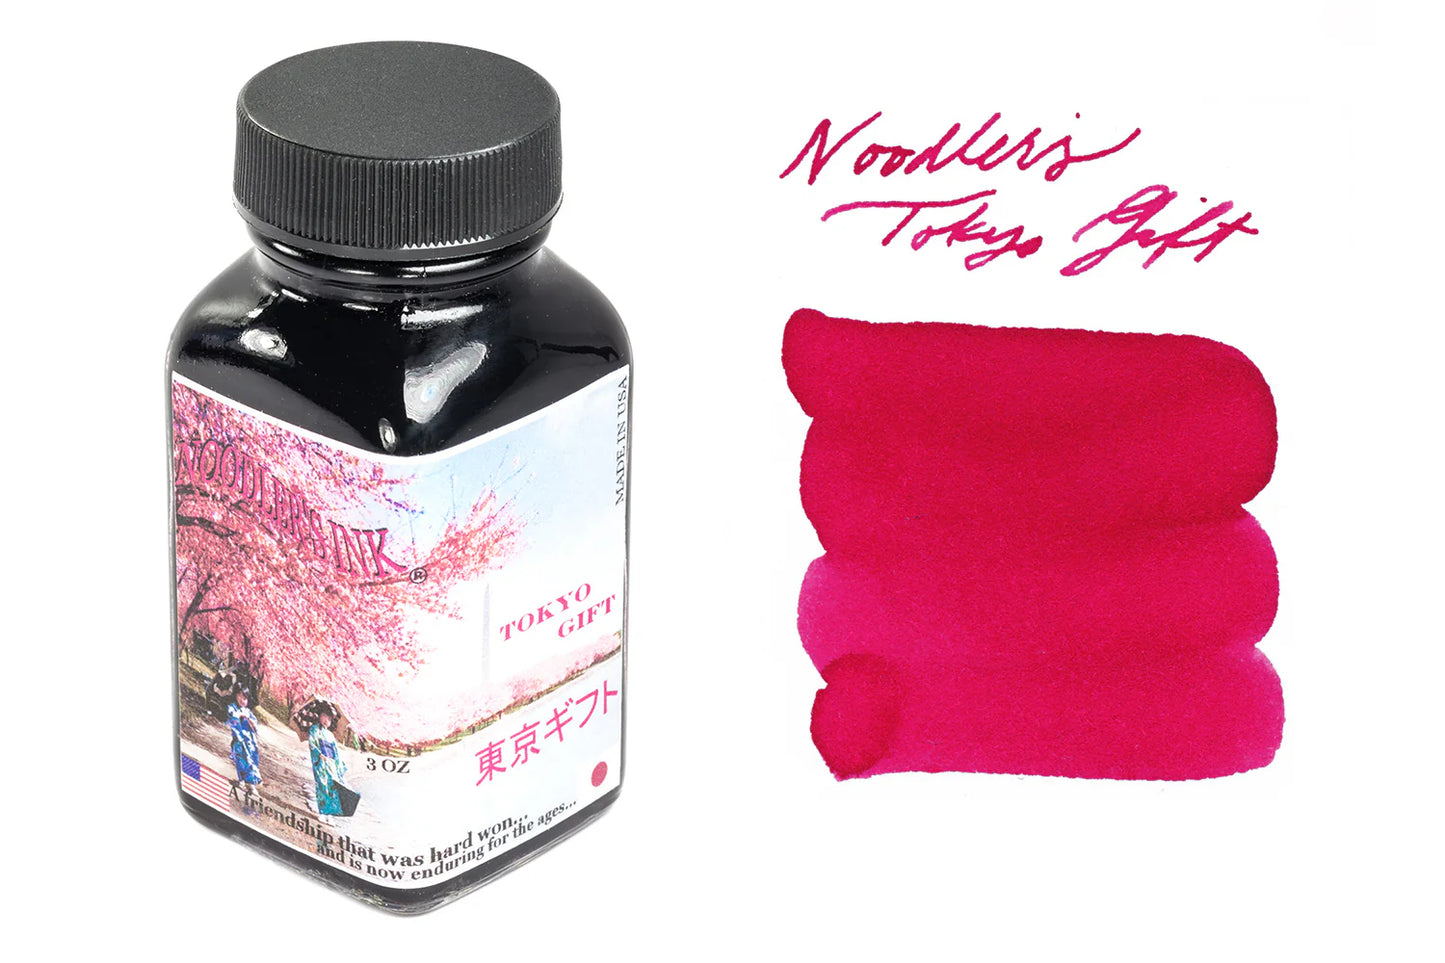 19100 Noodler's Tokyo Gift (Cherry Blossom Pink) 3 oz